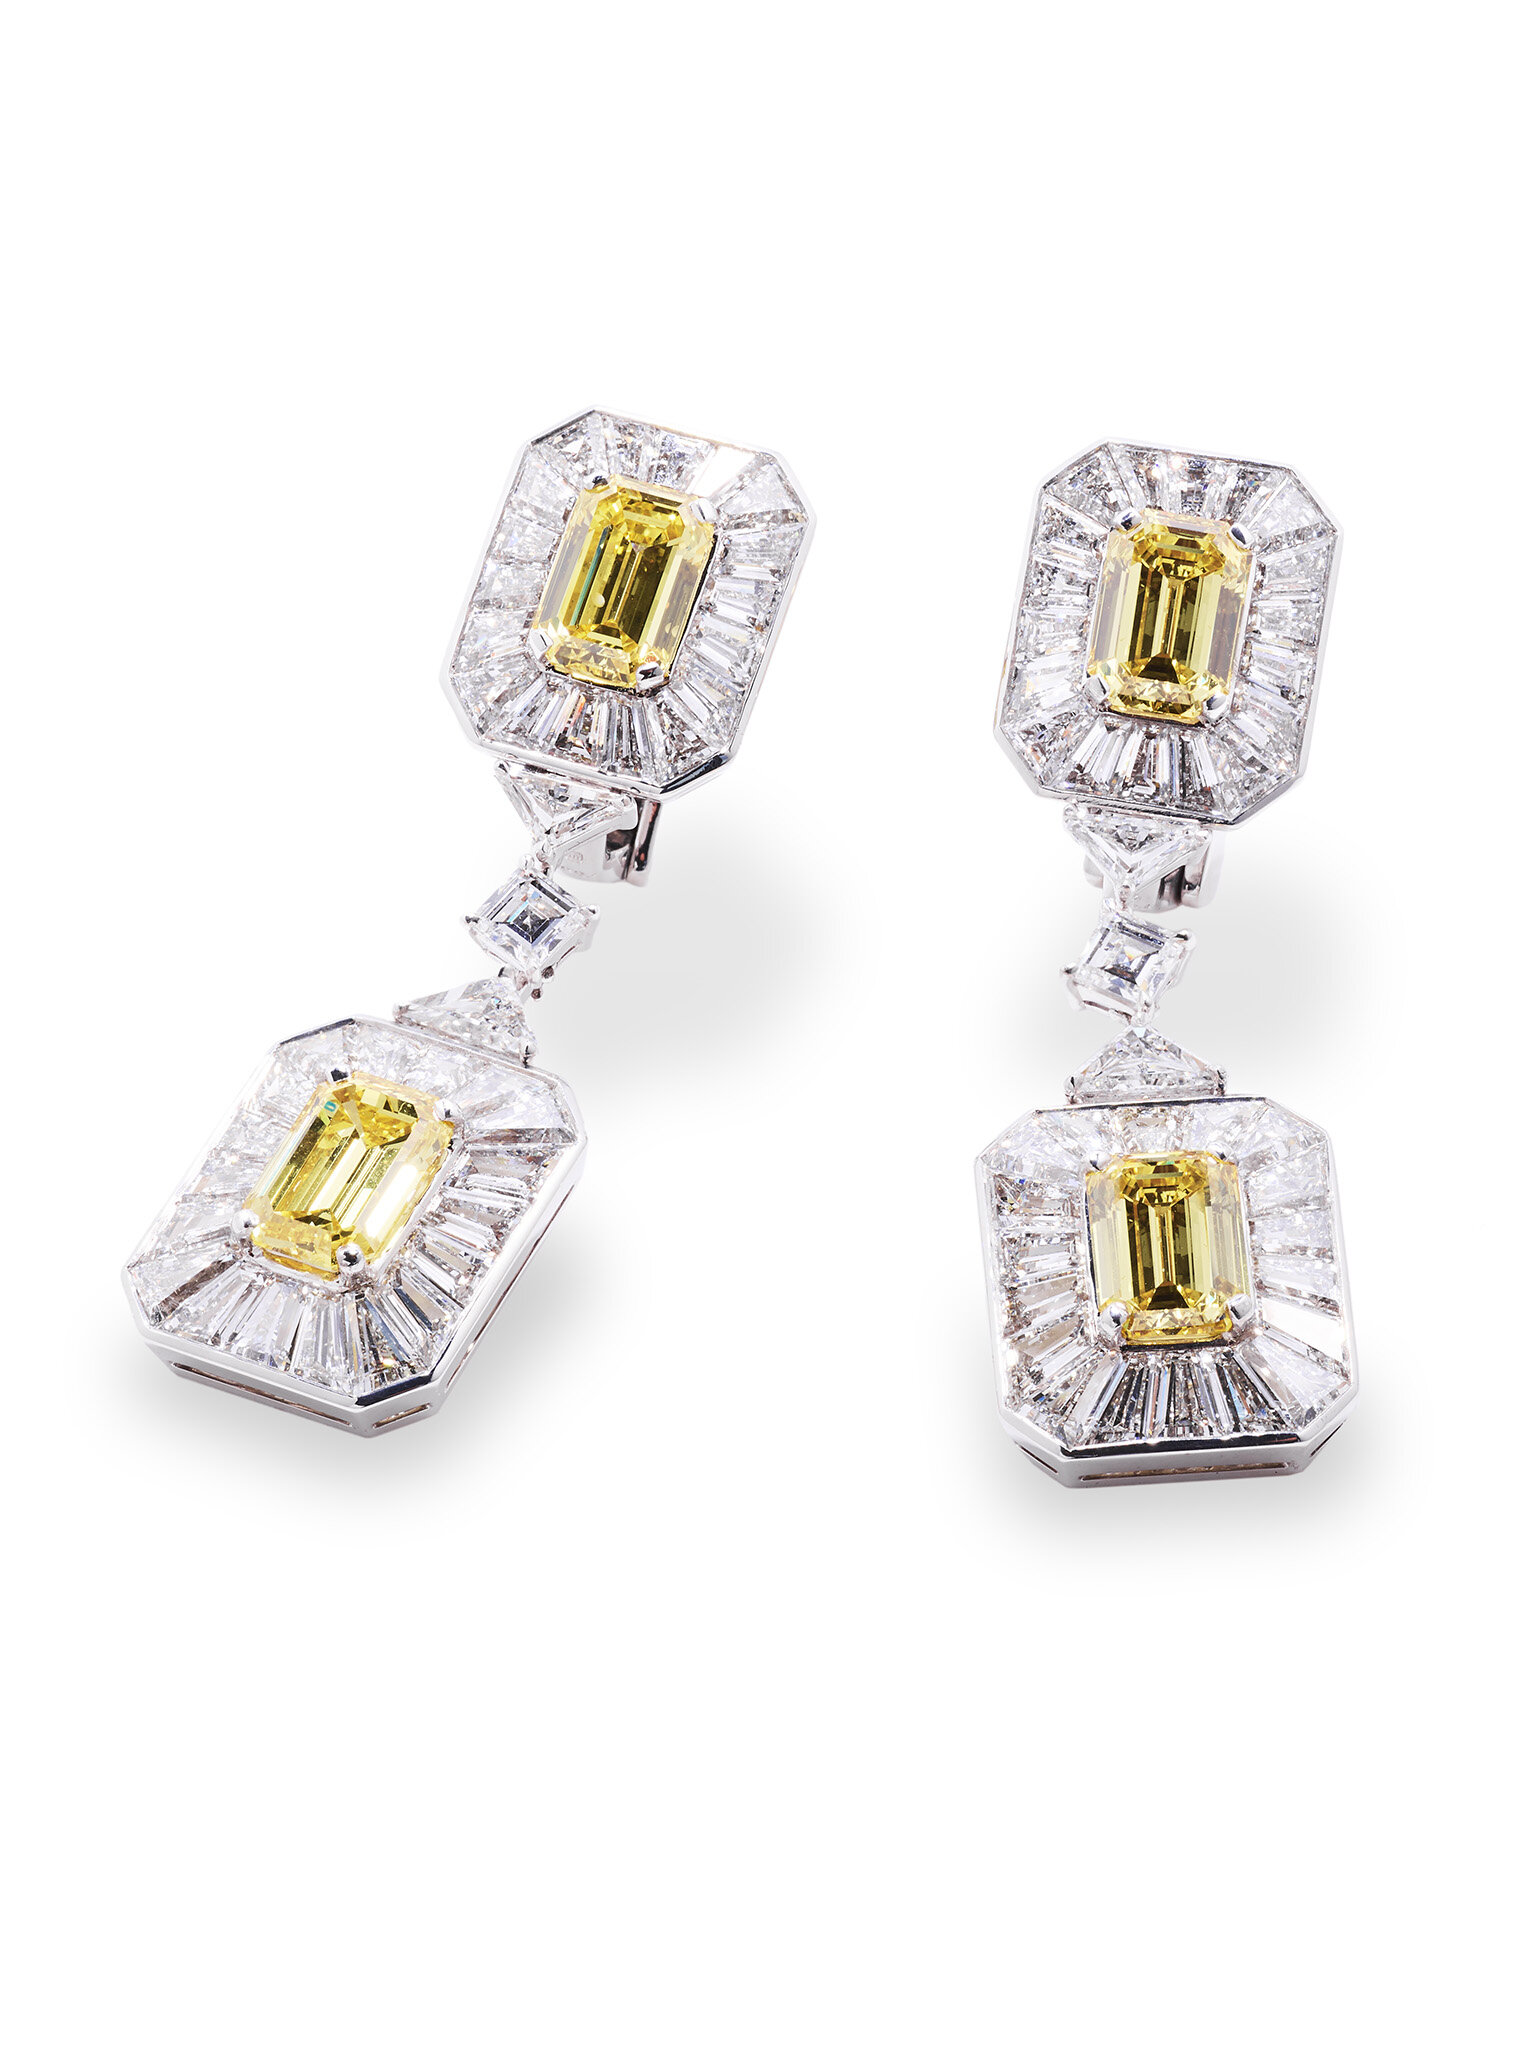 Fancy Vivid Yellow Diamond Earrings